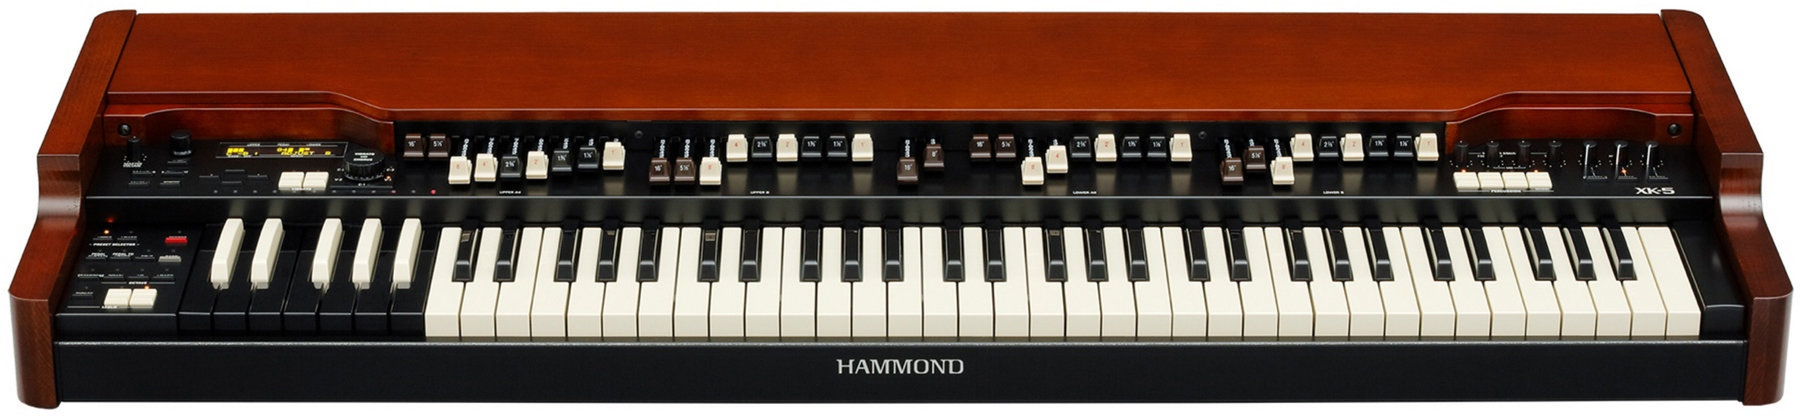 Elektronisch orgel Hammond XK-5